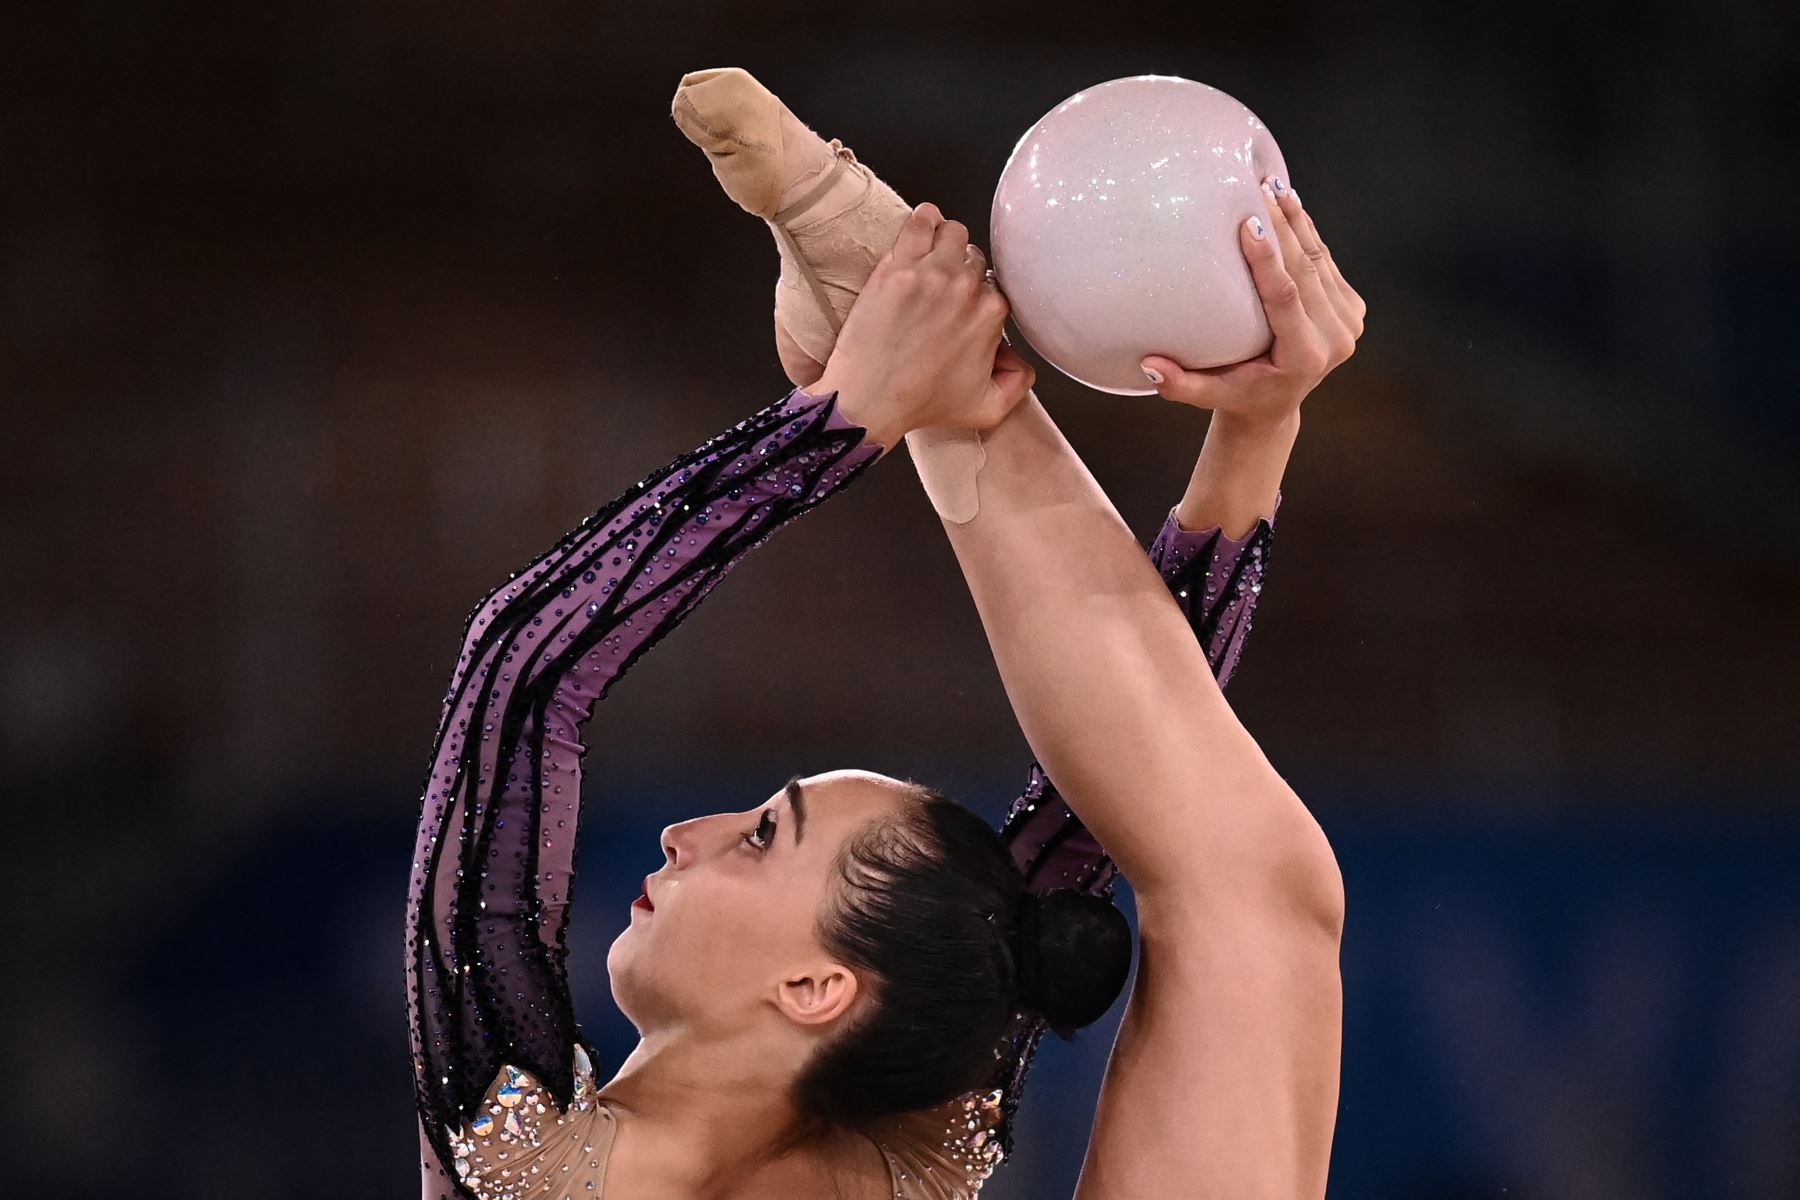 Salome Pazhava de Georgia compite en la clasificación general individual del evento de gimnasia rítmica durante los Juegos Olímpicos de Tokio 2020 en el centro de gimnasia Ariake en Tokio, el 6 de agosto de 2021. Foto: AFP